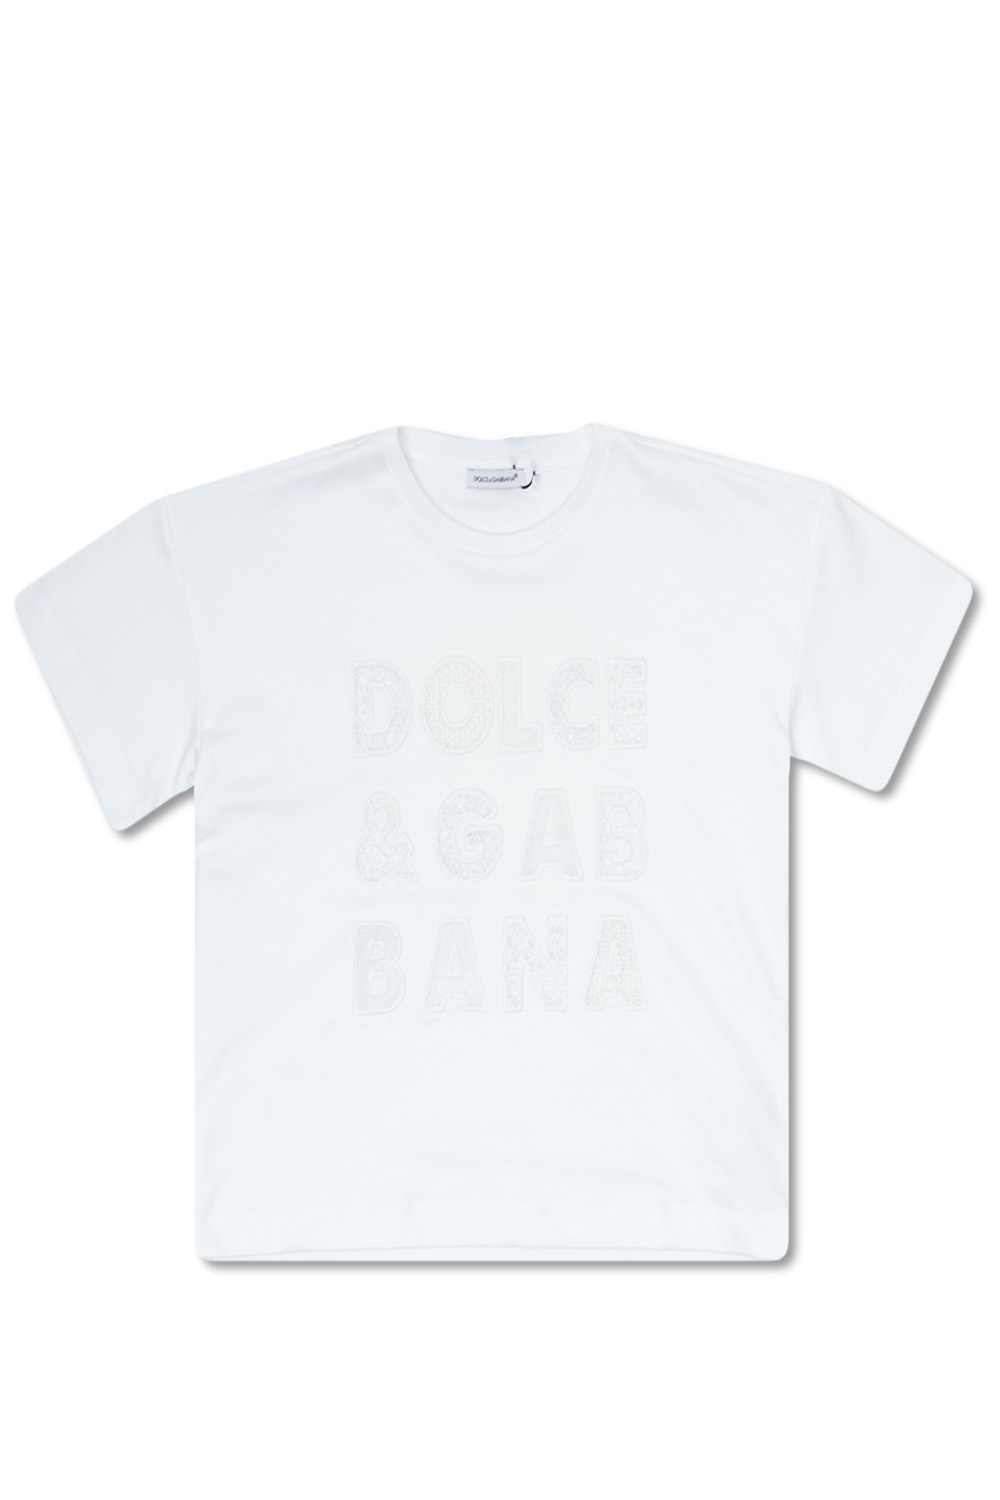 Dolce & Gabbana Kids We Are Kids La Dolce Vita logo T-shirt